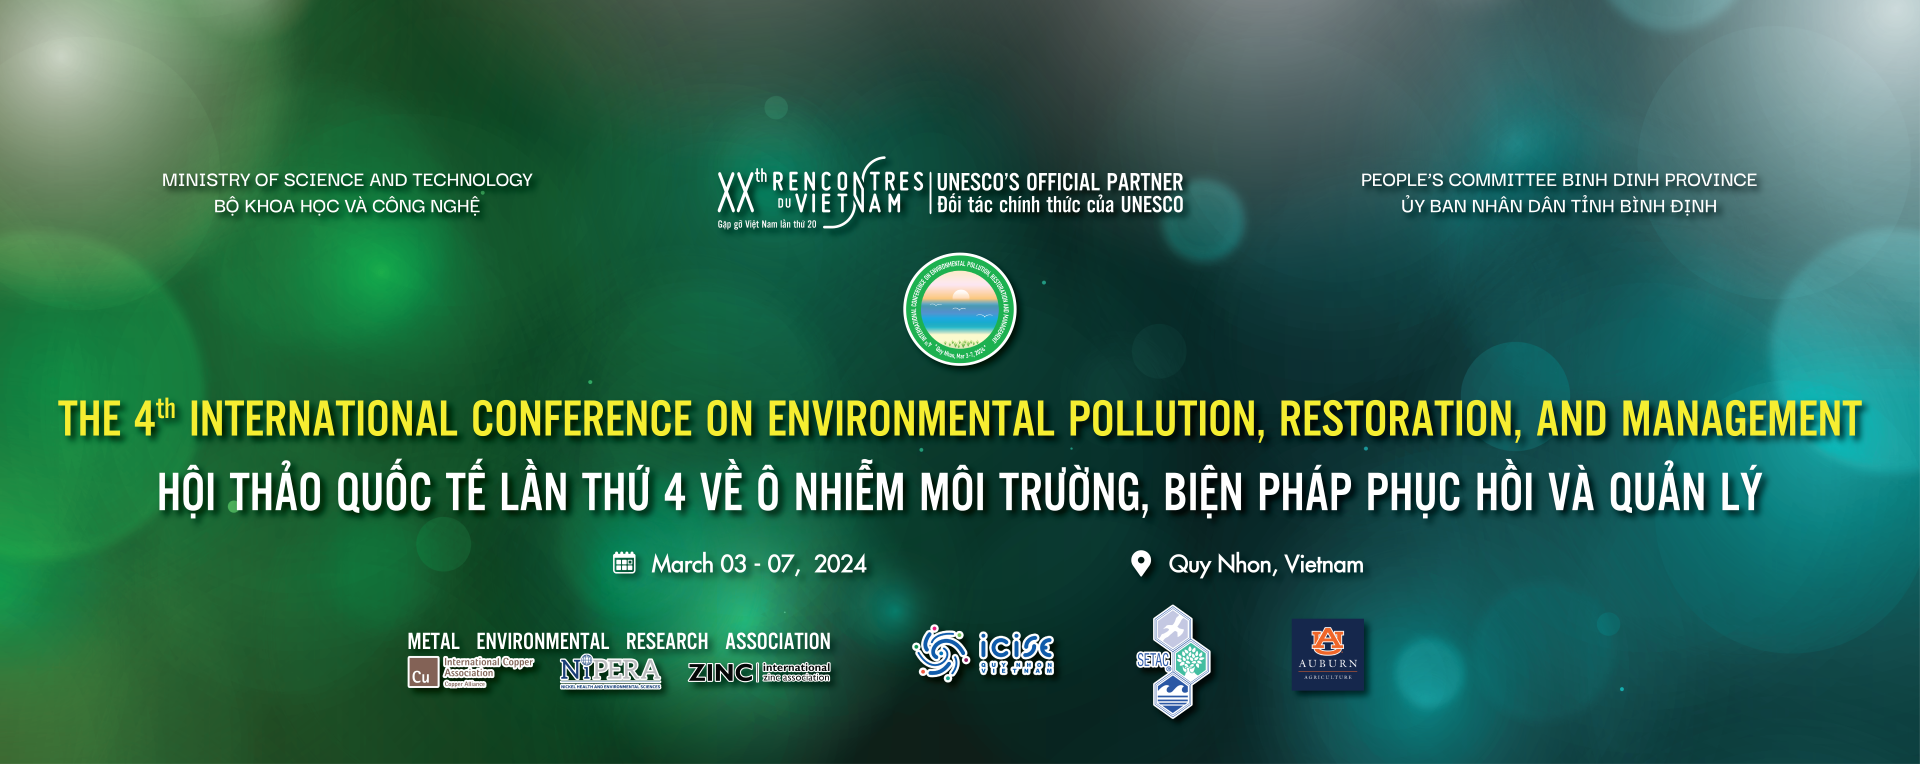 Hội nghị quốc tế lần thứ 4 về Ô nhiễm môi trường, biện pháp phục hồi và quản lý